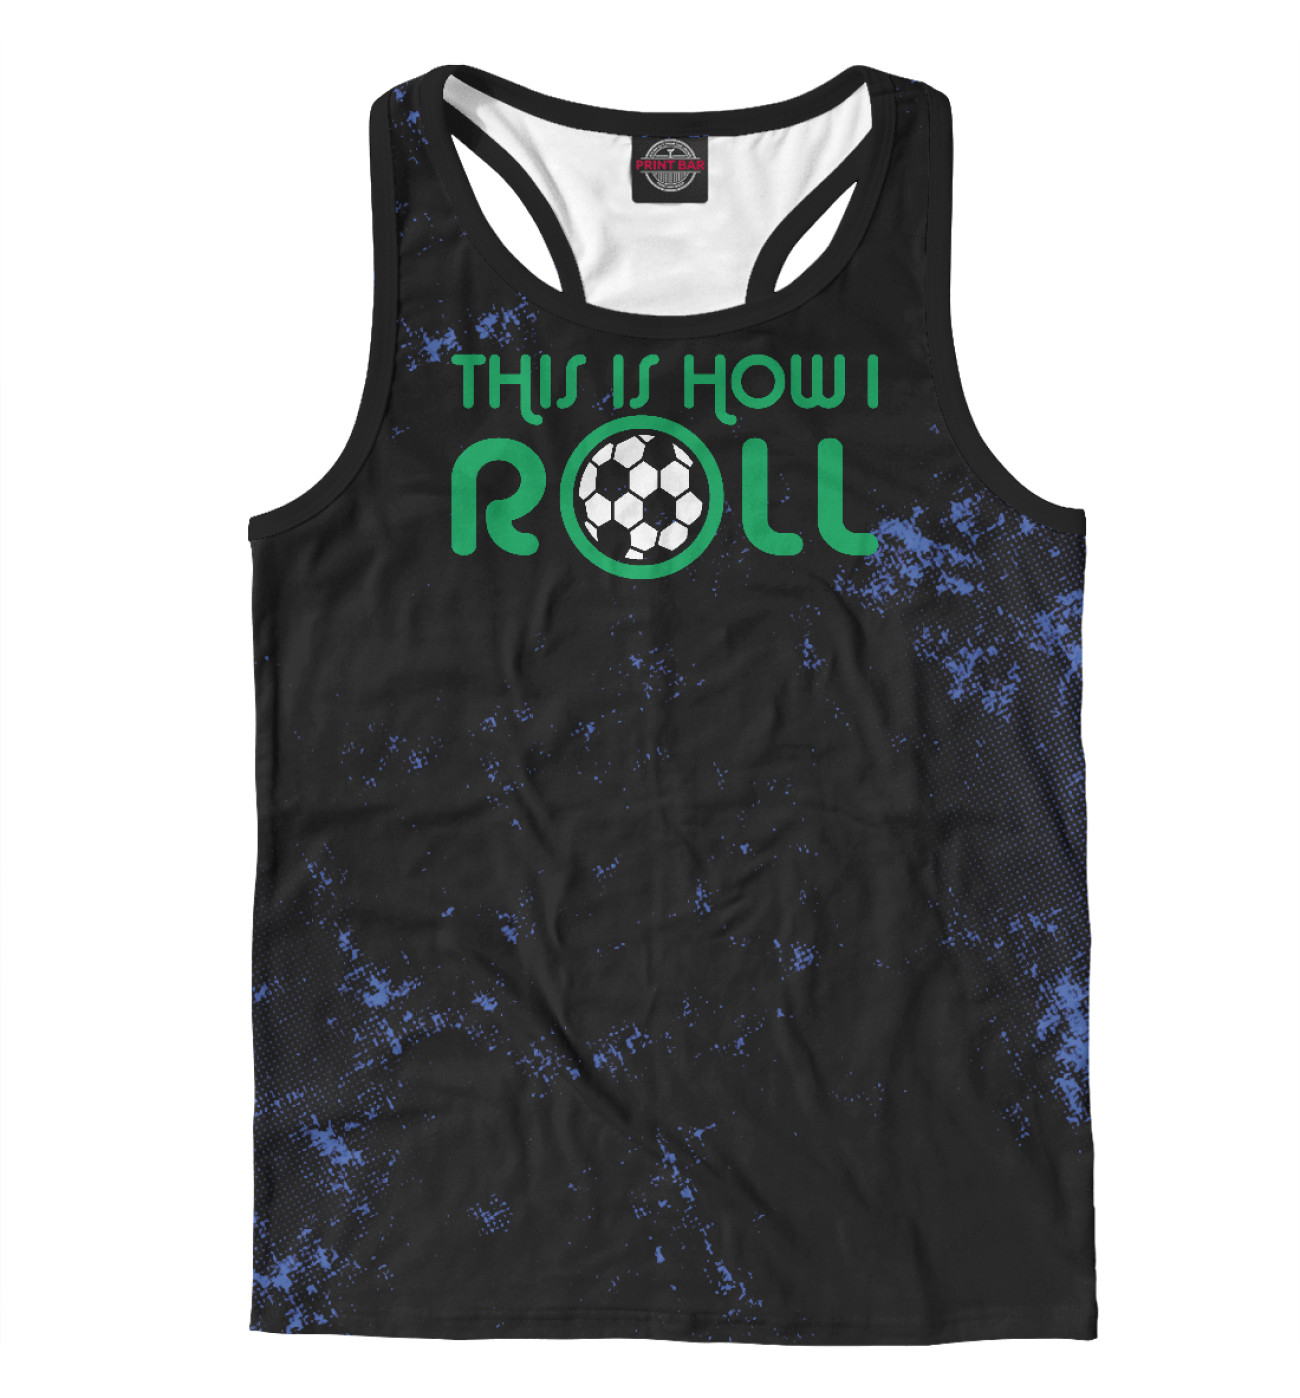 Мужская Борцовка This Is How I Roll Soccer, артикул: FTO-140586-mayb-2